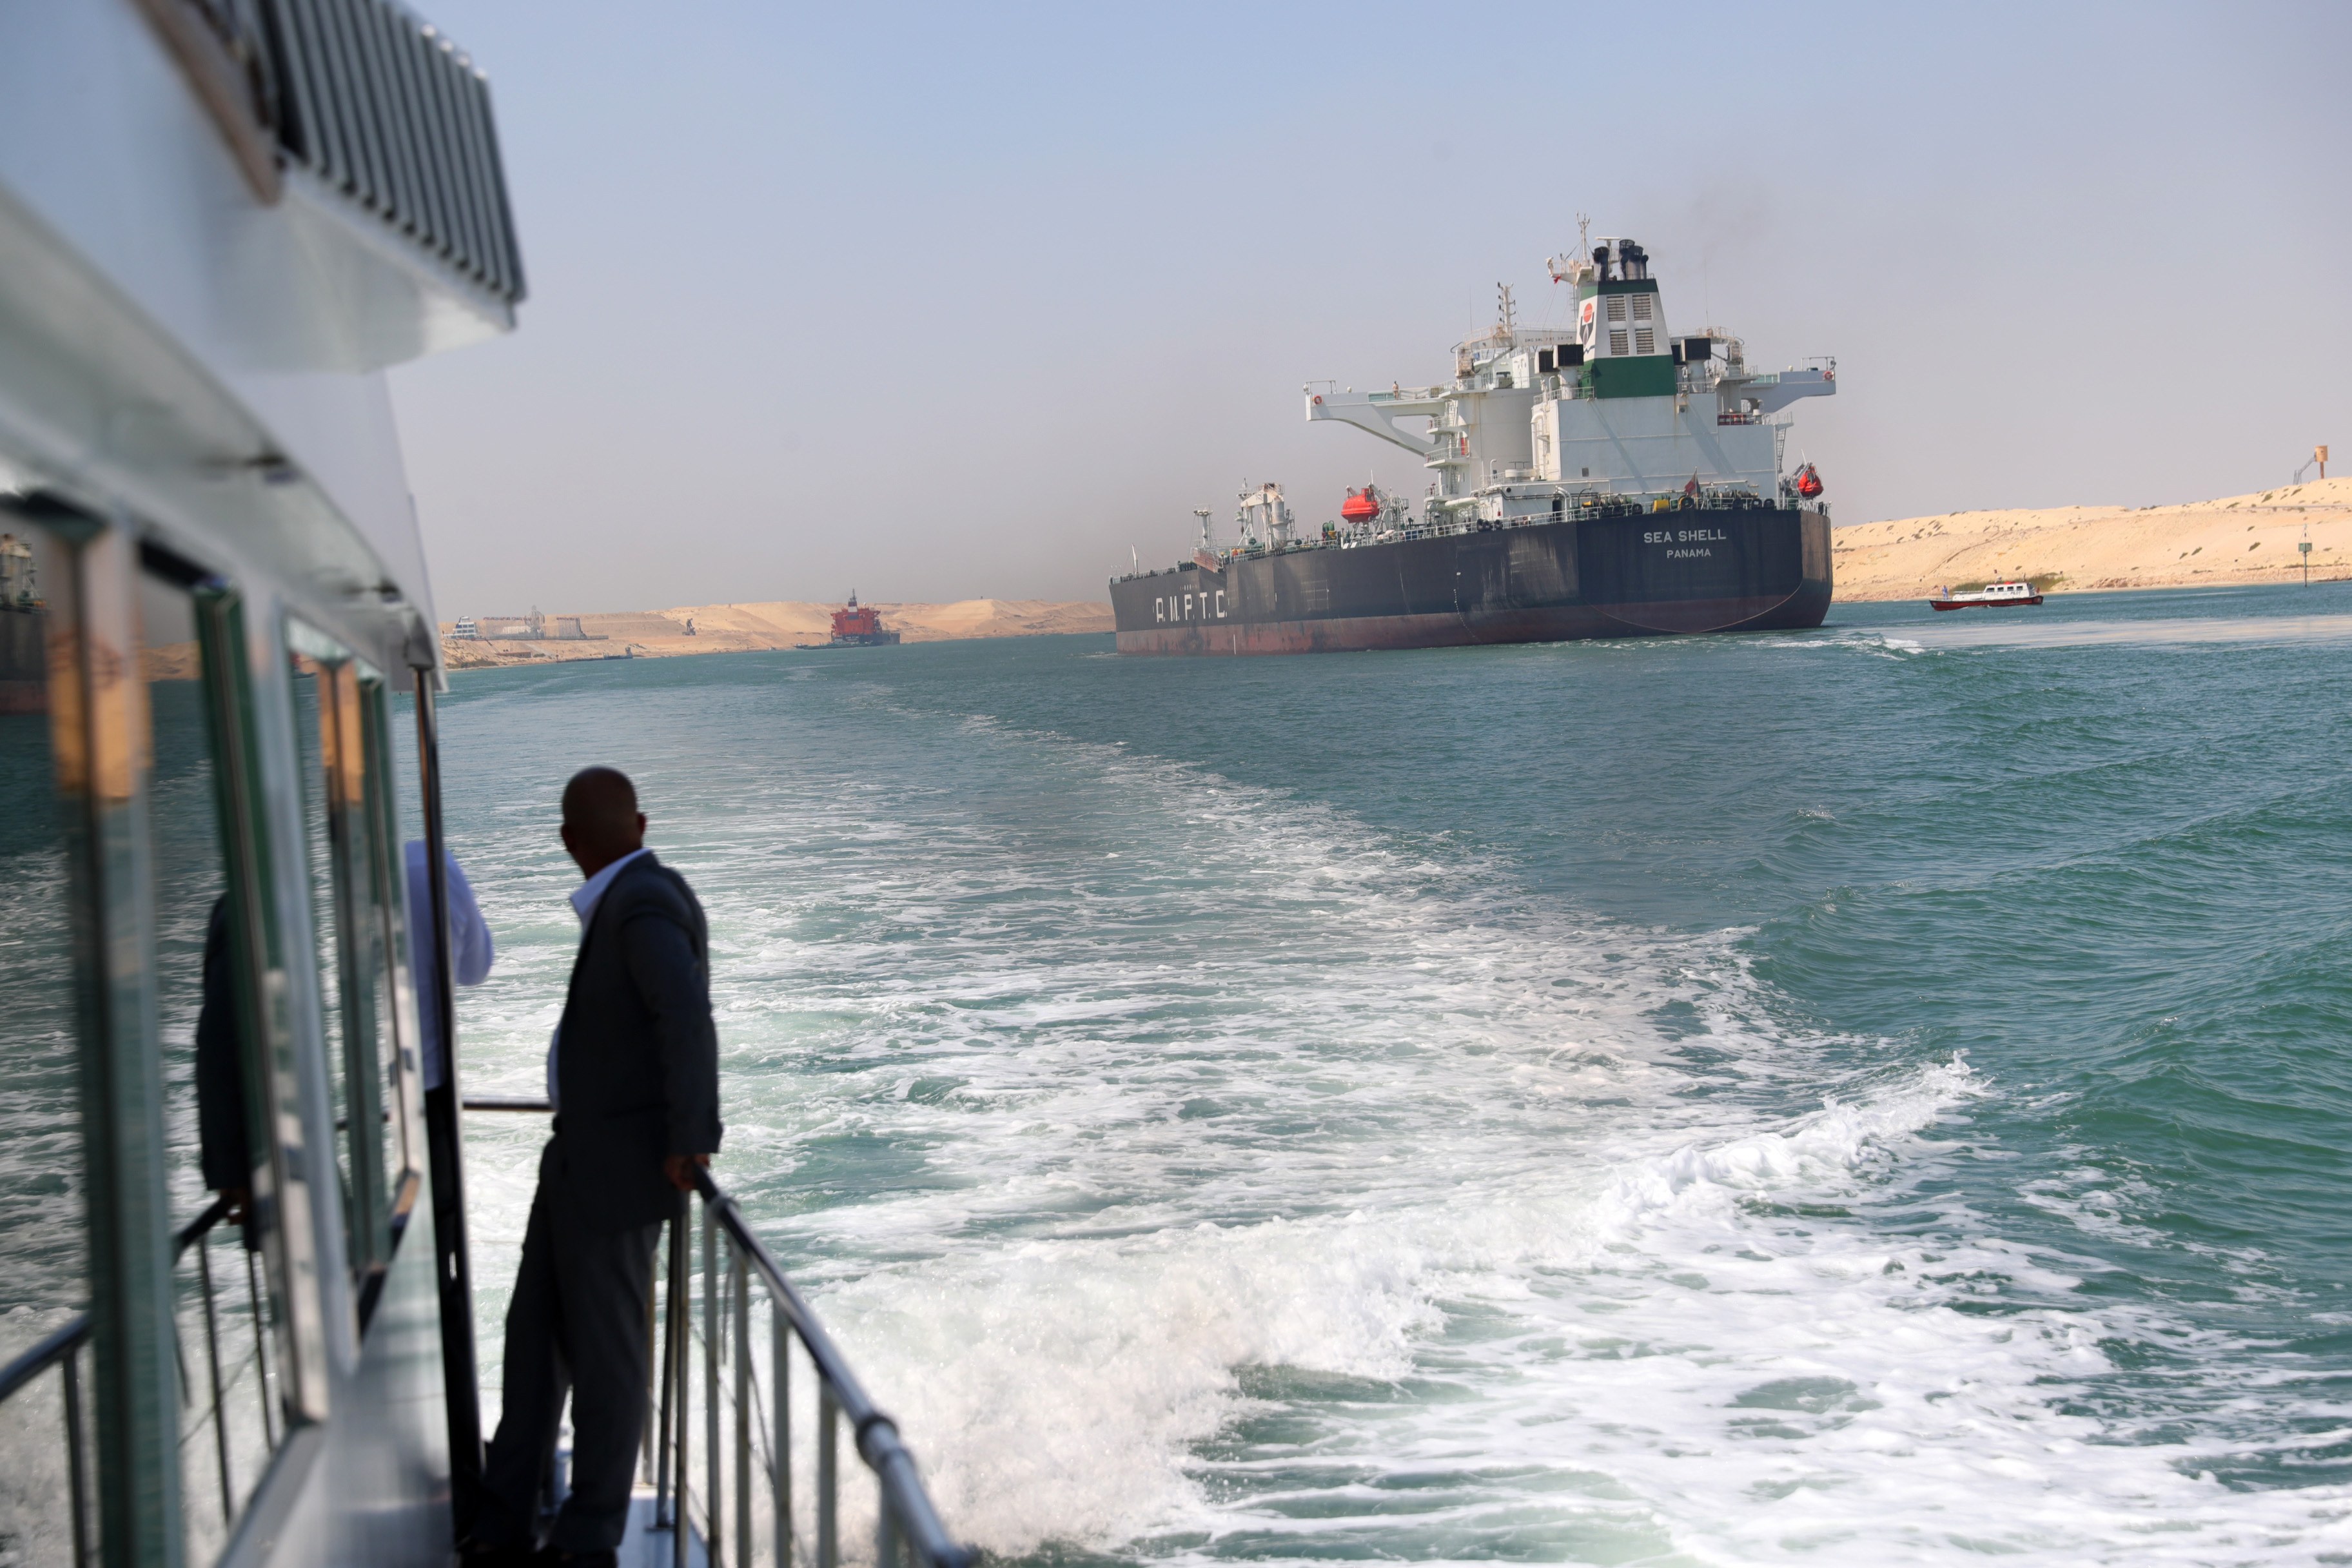 El comerç internacional, en escac per la inestabilitat al Mar Roig a causa de la guerra a Gaza